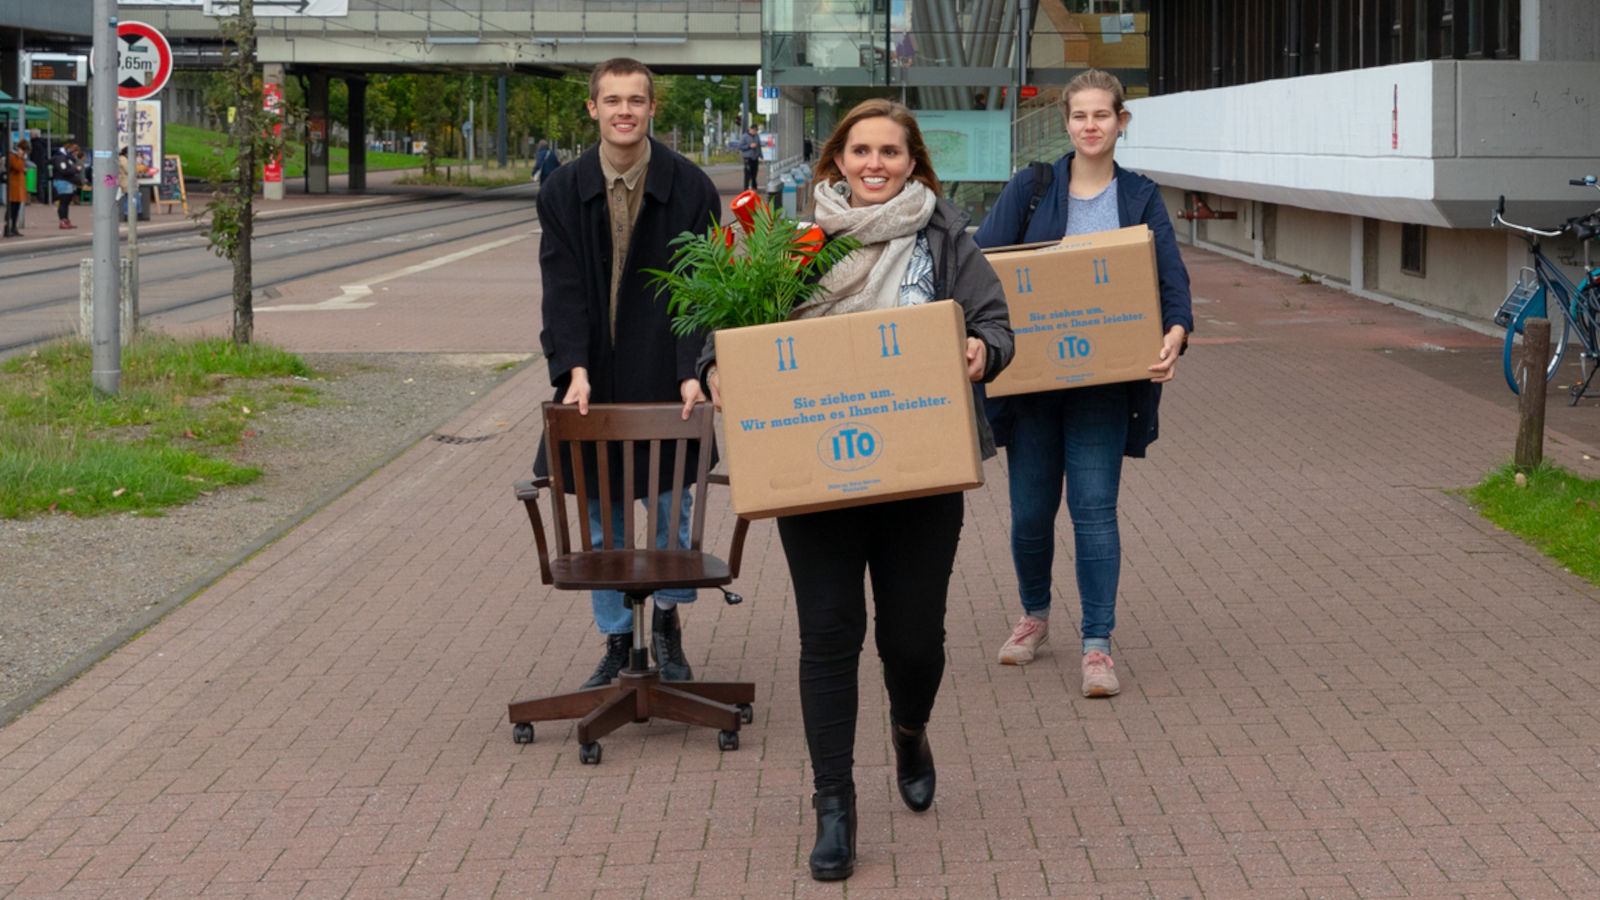 Drei junge Personen laufen lächelnd und mit Umzugskartons über den Campus der Uni Bremen